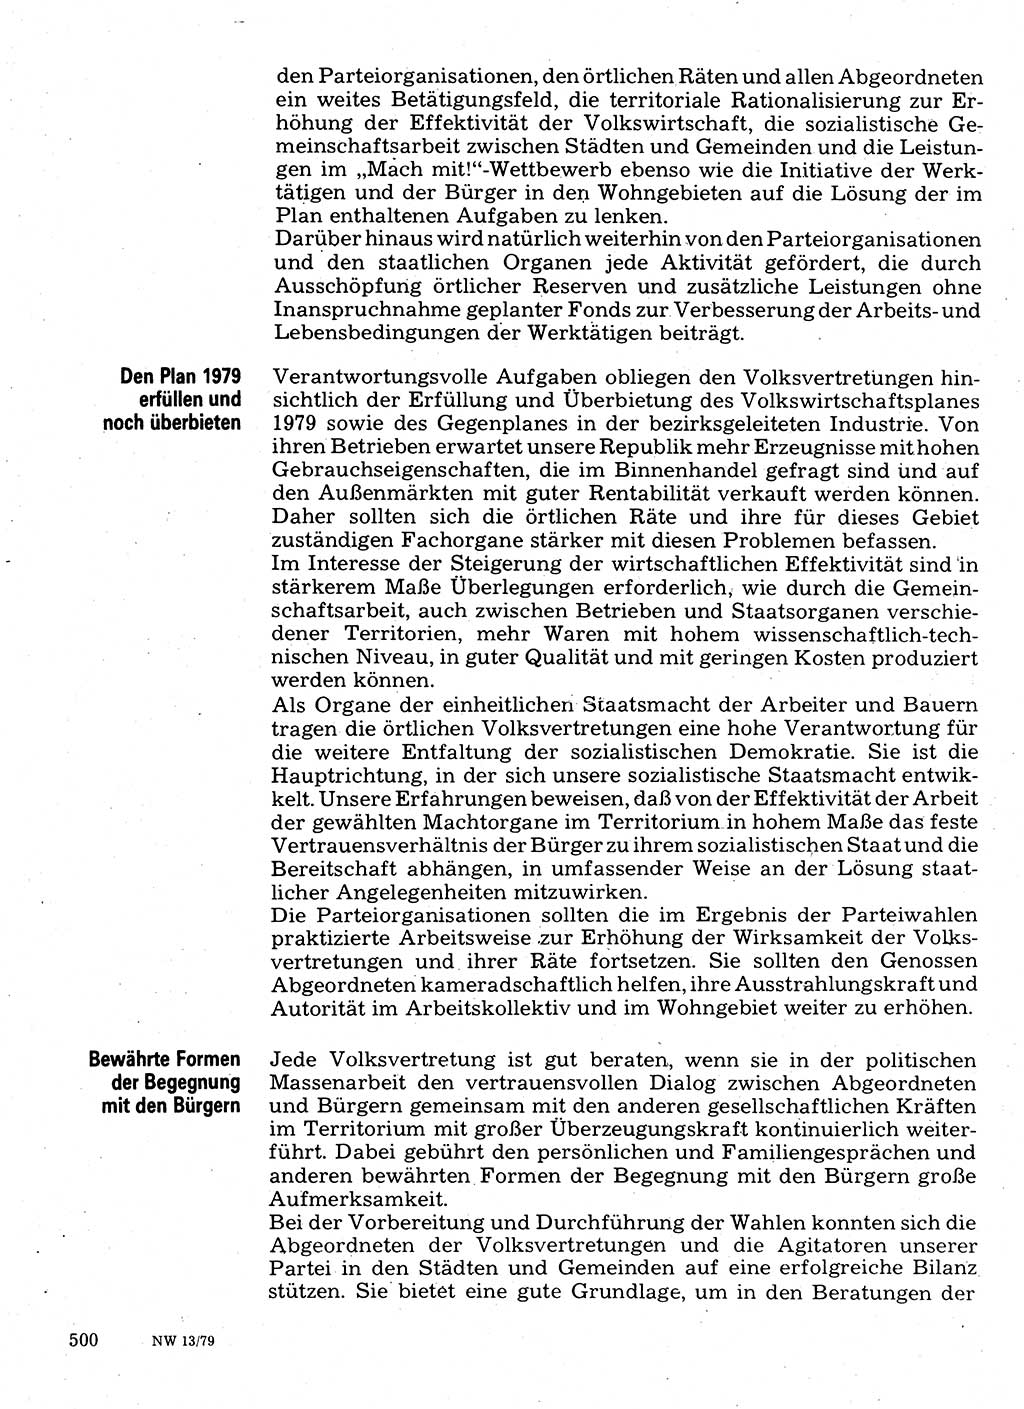 Neuer Weg (NW), Organ des Zentralkomitees (ZK) der SED (Sozialistische Einheitspartei Deutschlands) für Fragen des Parteilebens, 34. Jahrgang [Deutsche Demokratische Republik (DDR)] 1979, Seite 500 (NW ZK SED DDR 1979, S. 500)